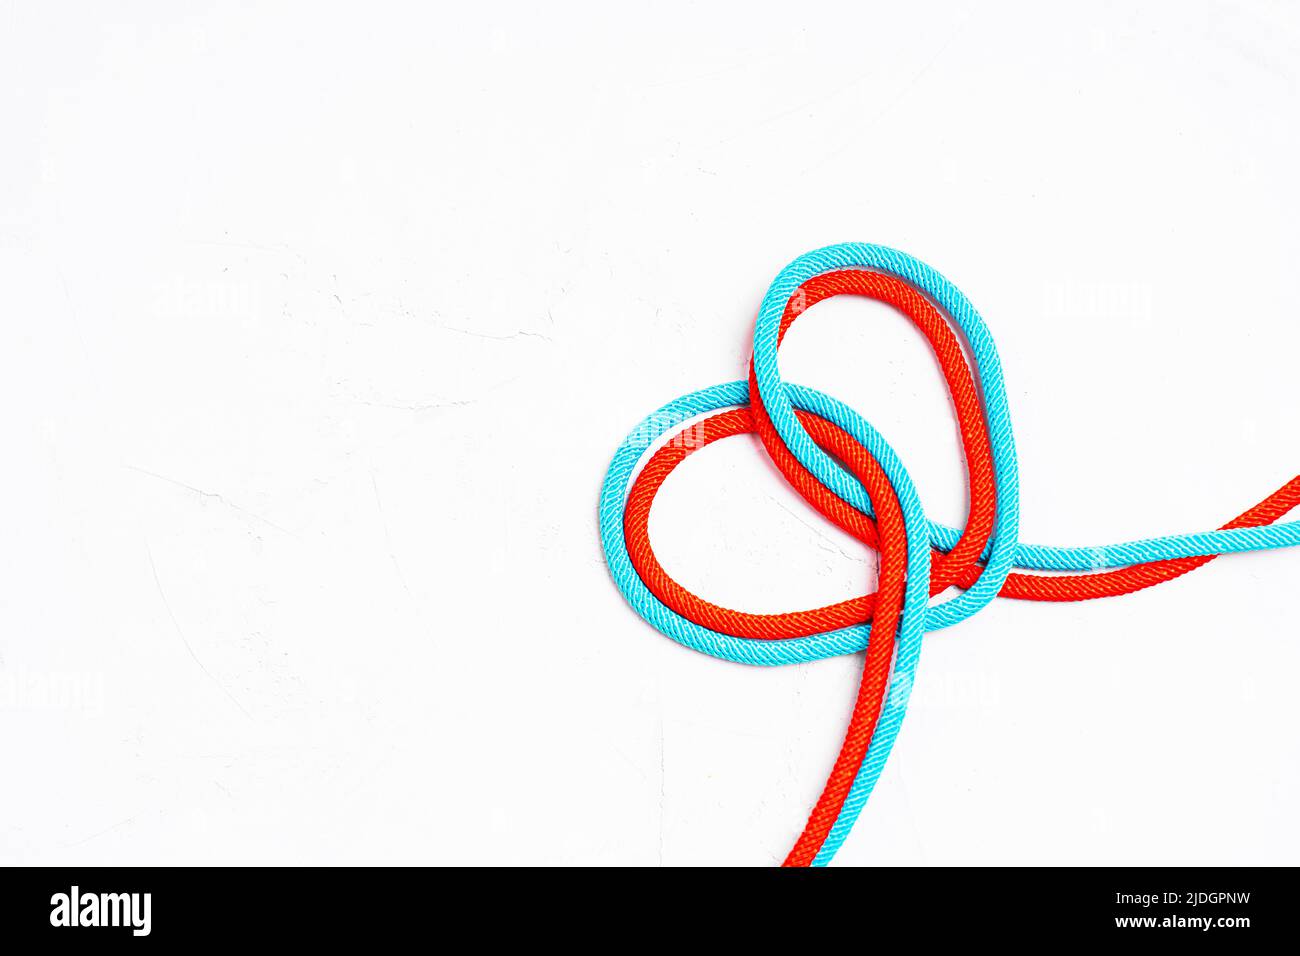 Rote und blaue Schnüre verflochten, um eine Herzform auf grauem Hintergrund zu bilden. Stockfoto